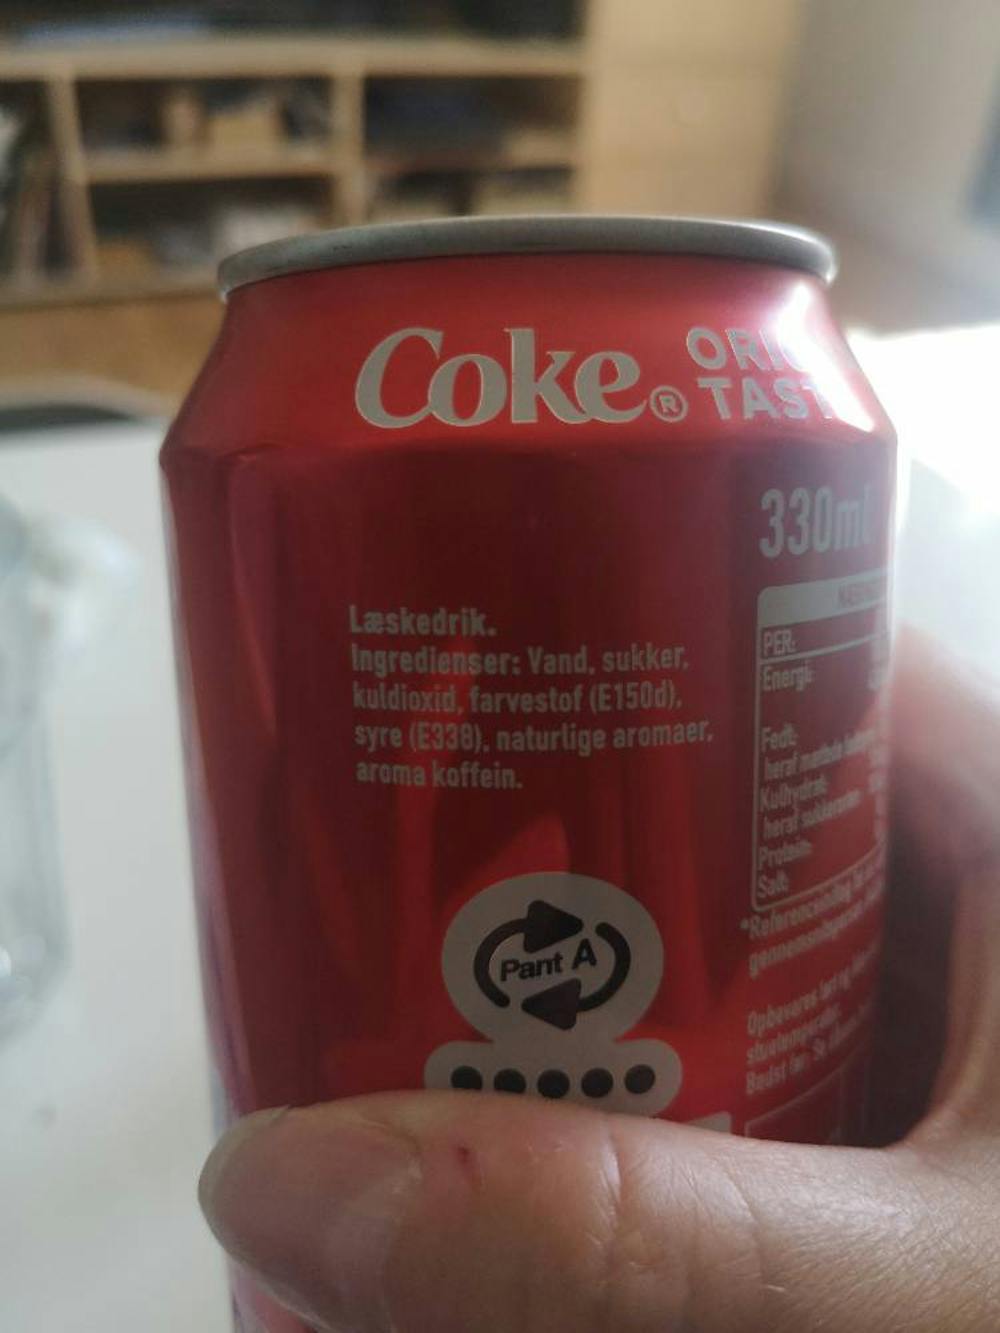 Ingrediensliste - Coca-Cola Original Taste, Coca-Cola